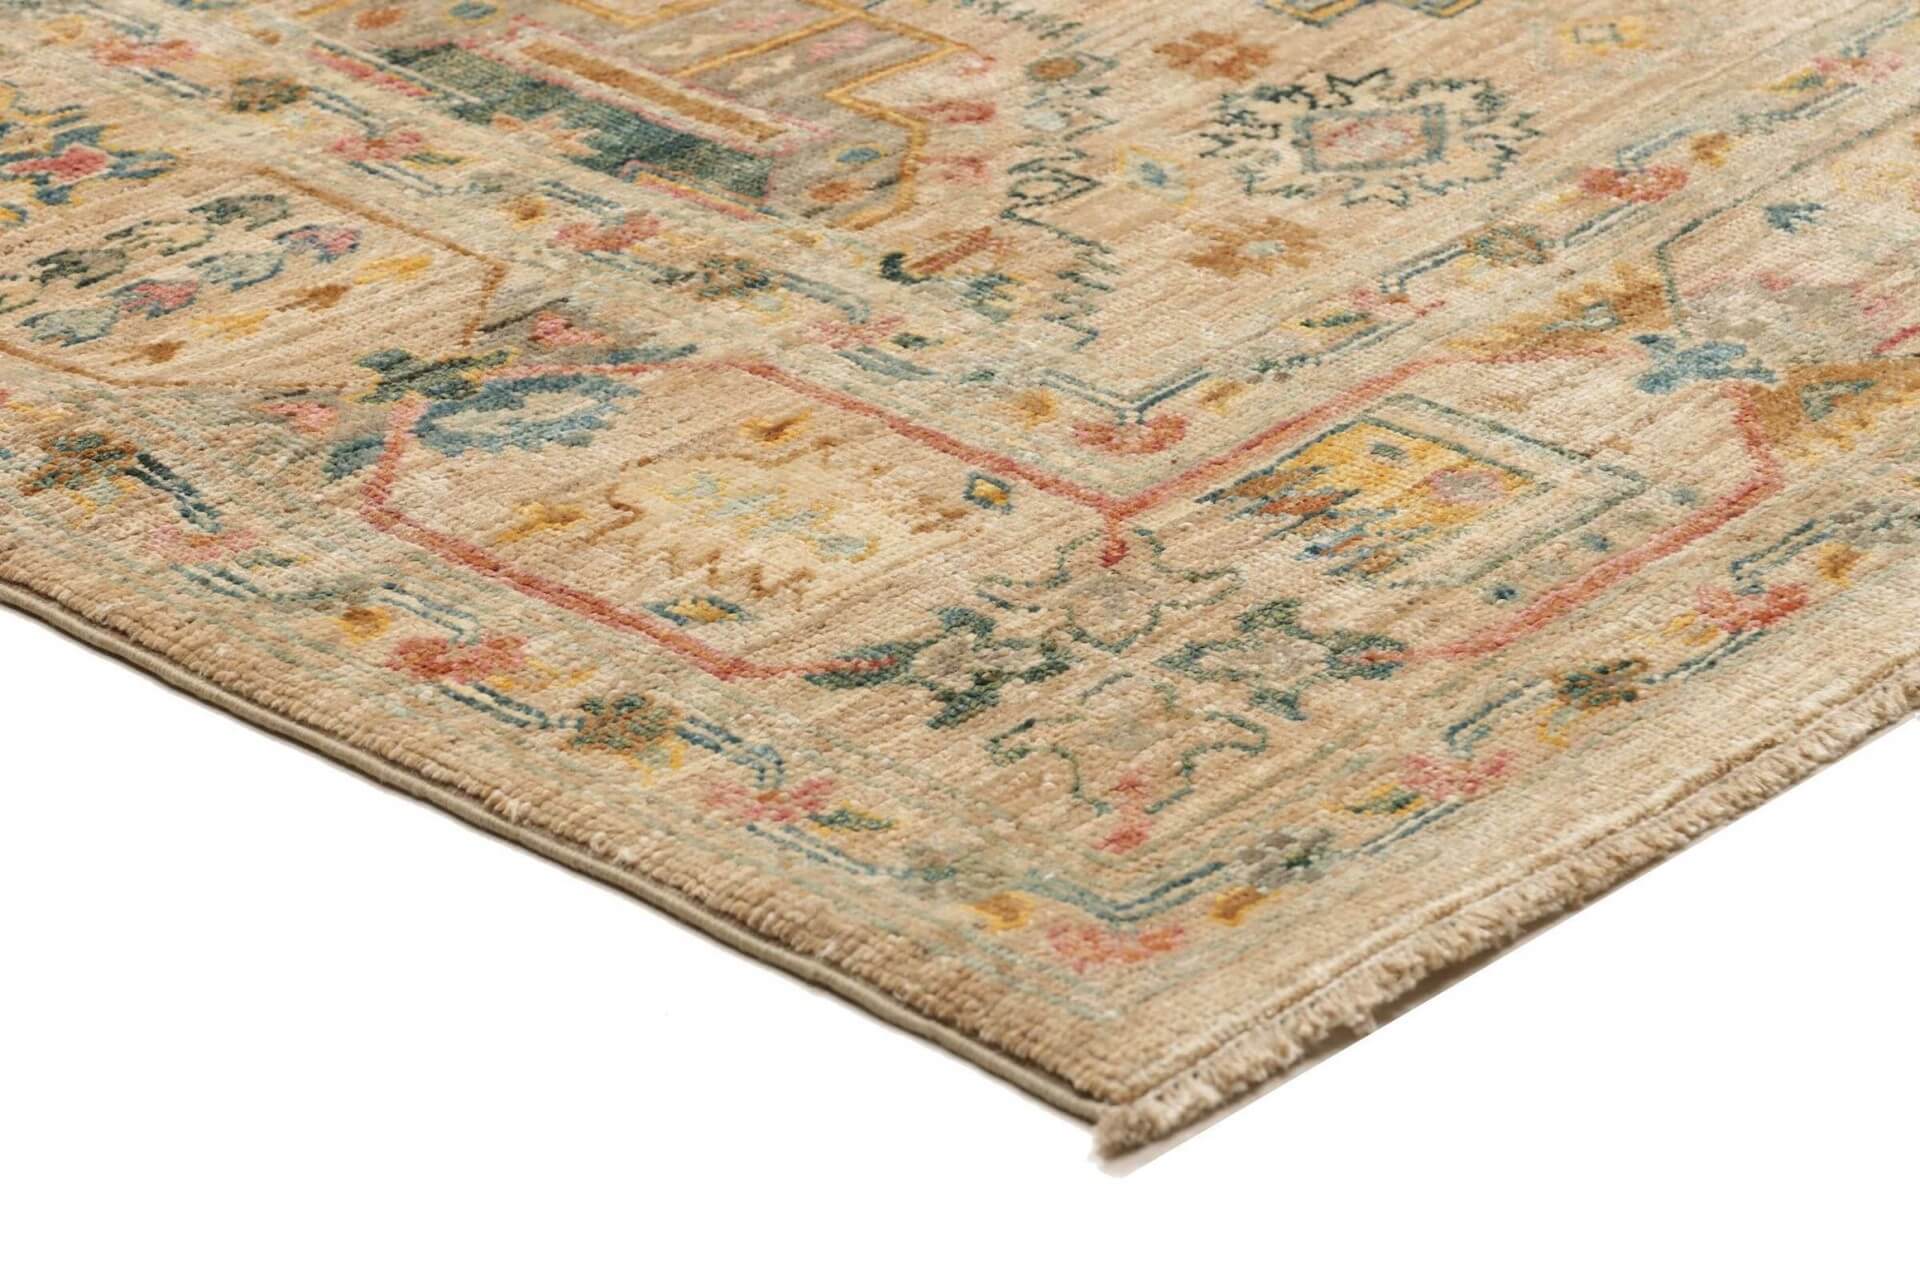  Afghanteppich Triabl Beige, reine Schurwolle, handgeknüpft, 169 x 238 cm, Detailansicht